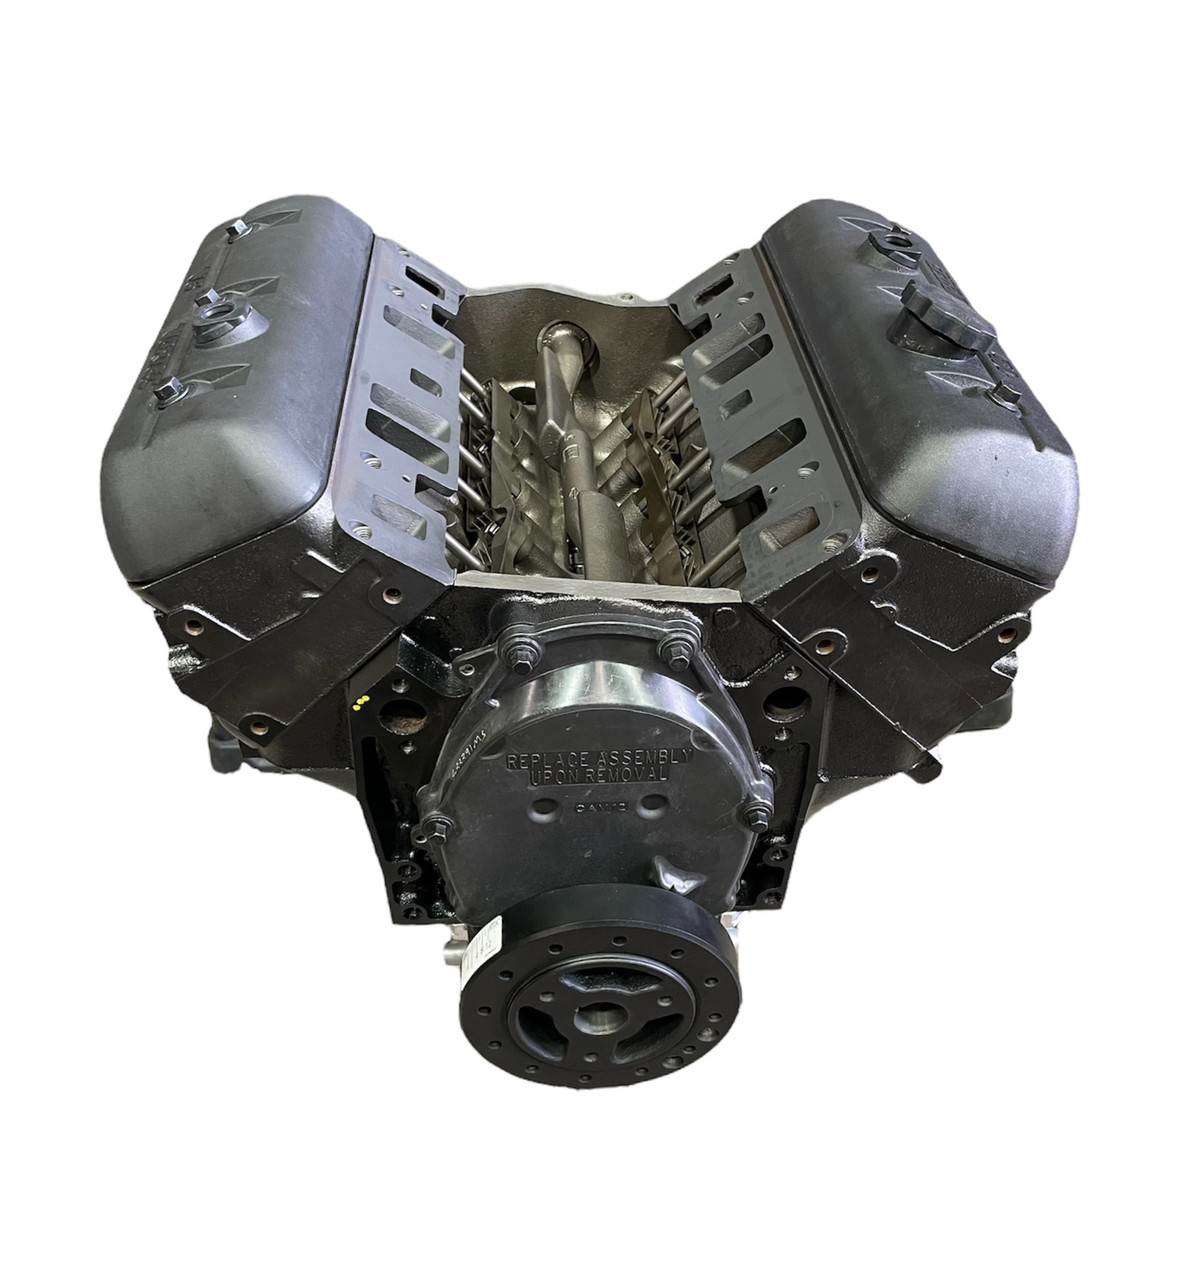 Remanufactured 4.3L Vortec (1996-2007) Marine Base Engine